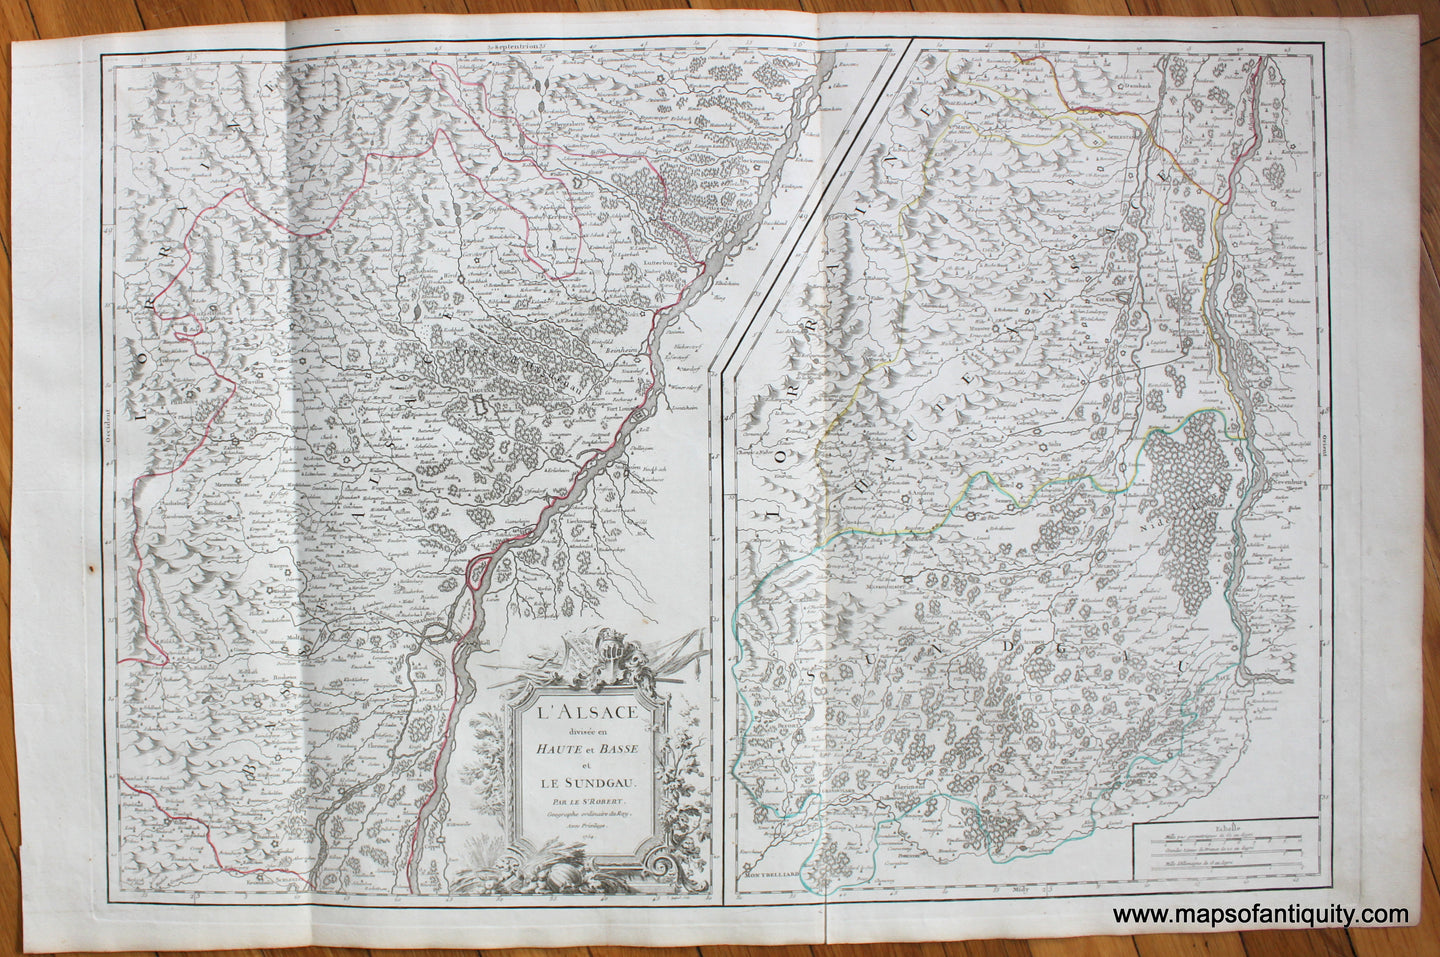 Antique-Hand-Colored-Map-L'Alsace-divisee-en-Haute-et-Basse-et-Le-Sundgau.-Europe-France-1754-Vaugondy-Maps-Of-Antiquity